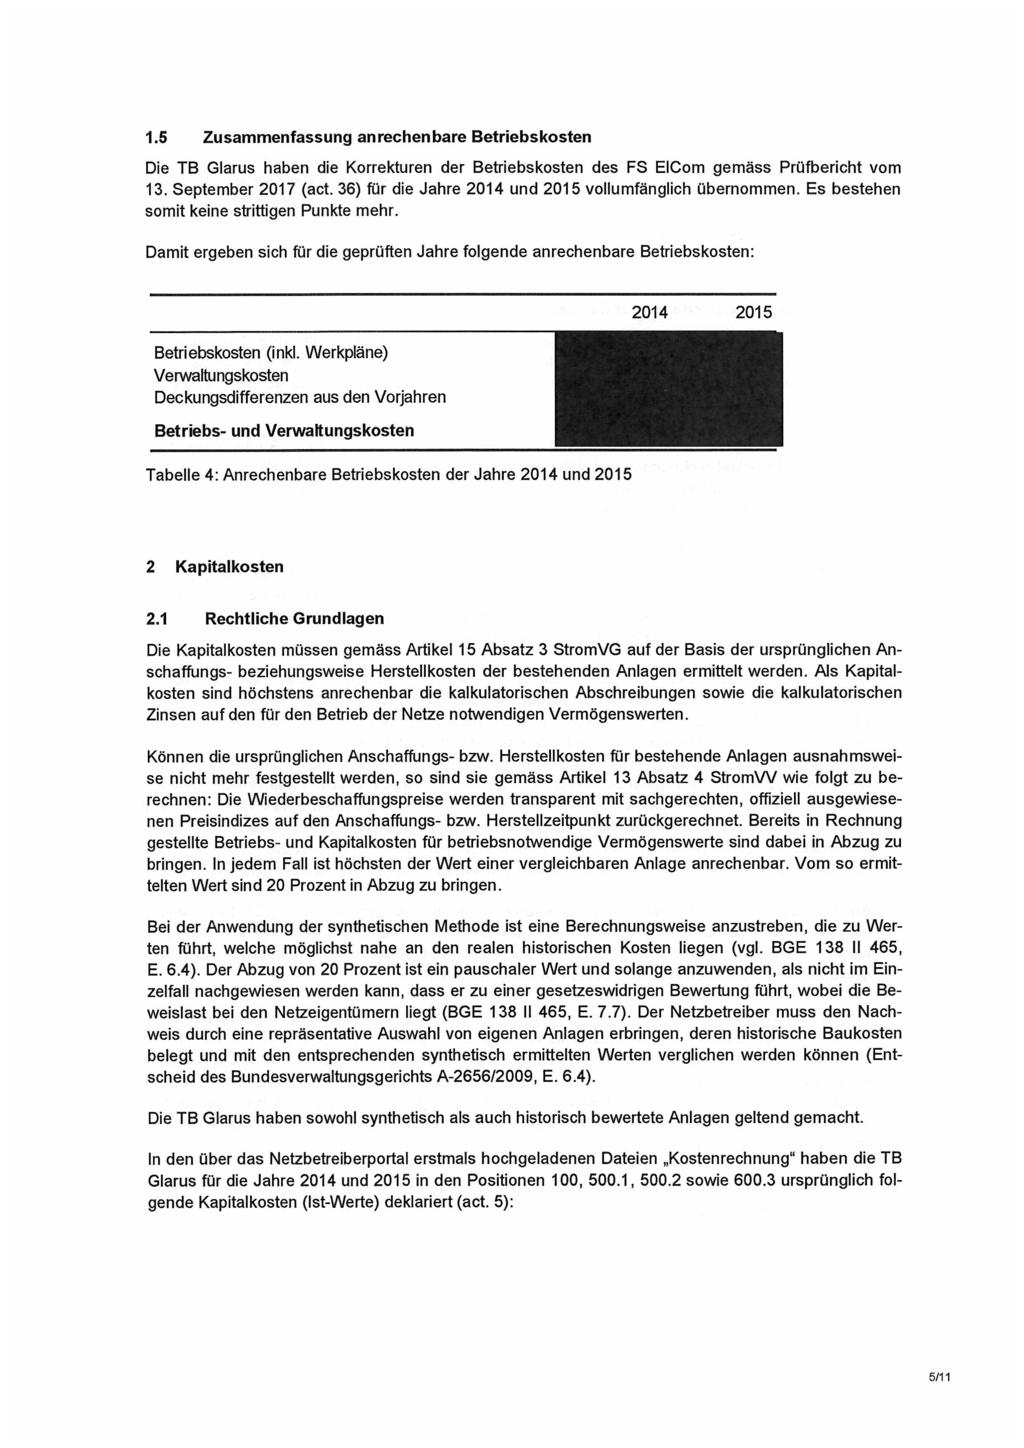 1.5 Zusammenfassung anrechenbare Betriebskosten Die TB Glarus haben die Korrekturen der Betriebskosten des FS EICom gemäss Prüfbericht vom 13. September 2017 (act.